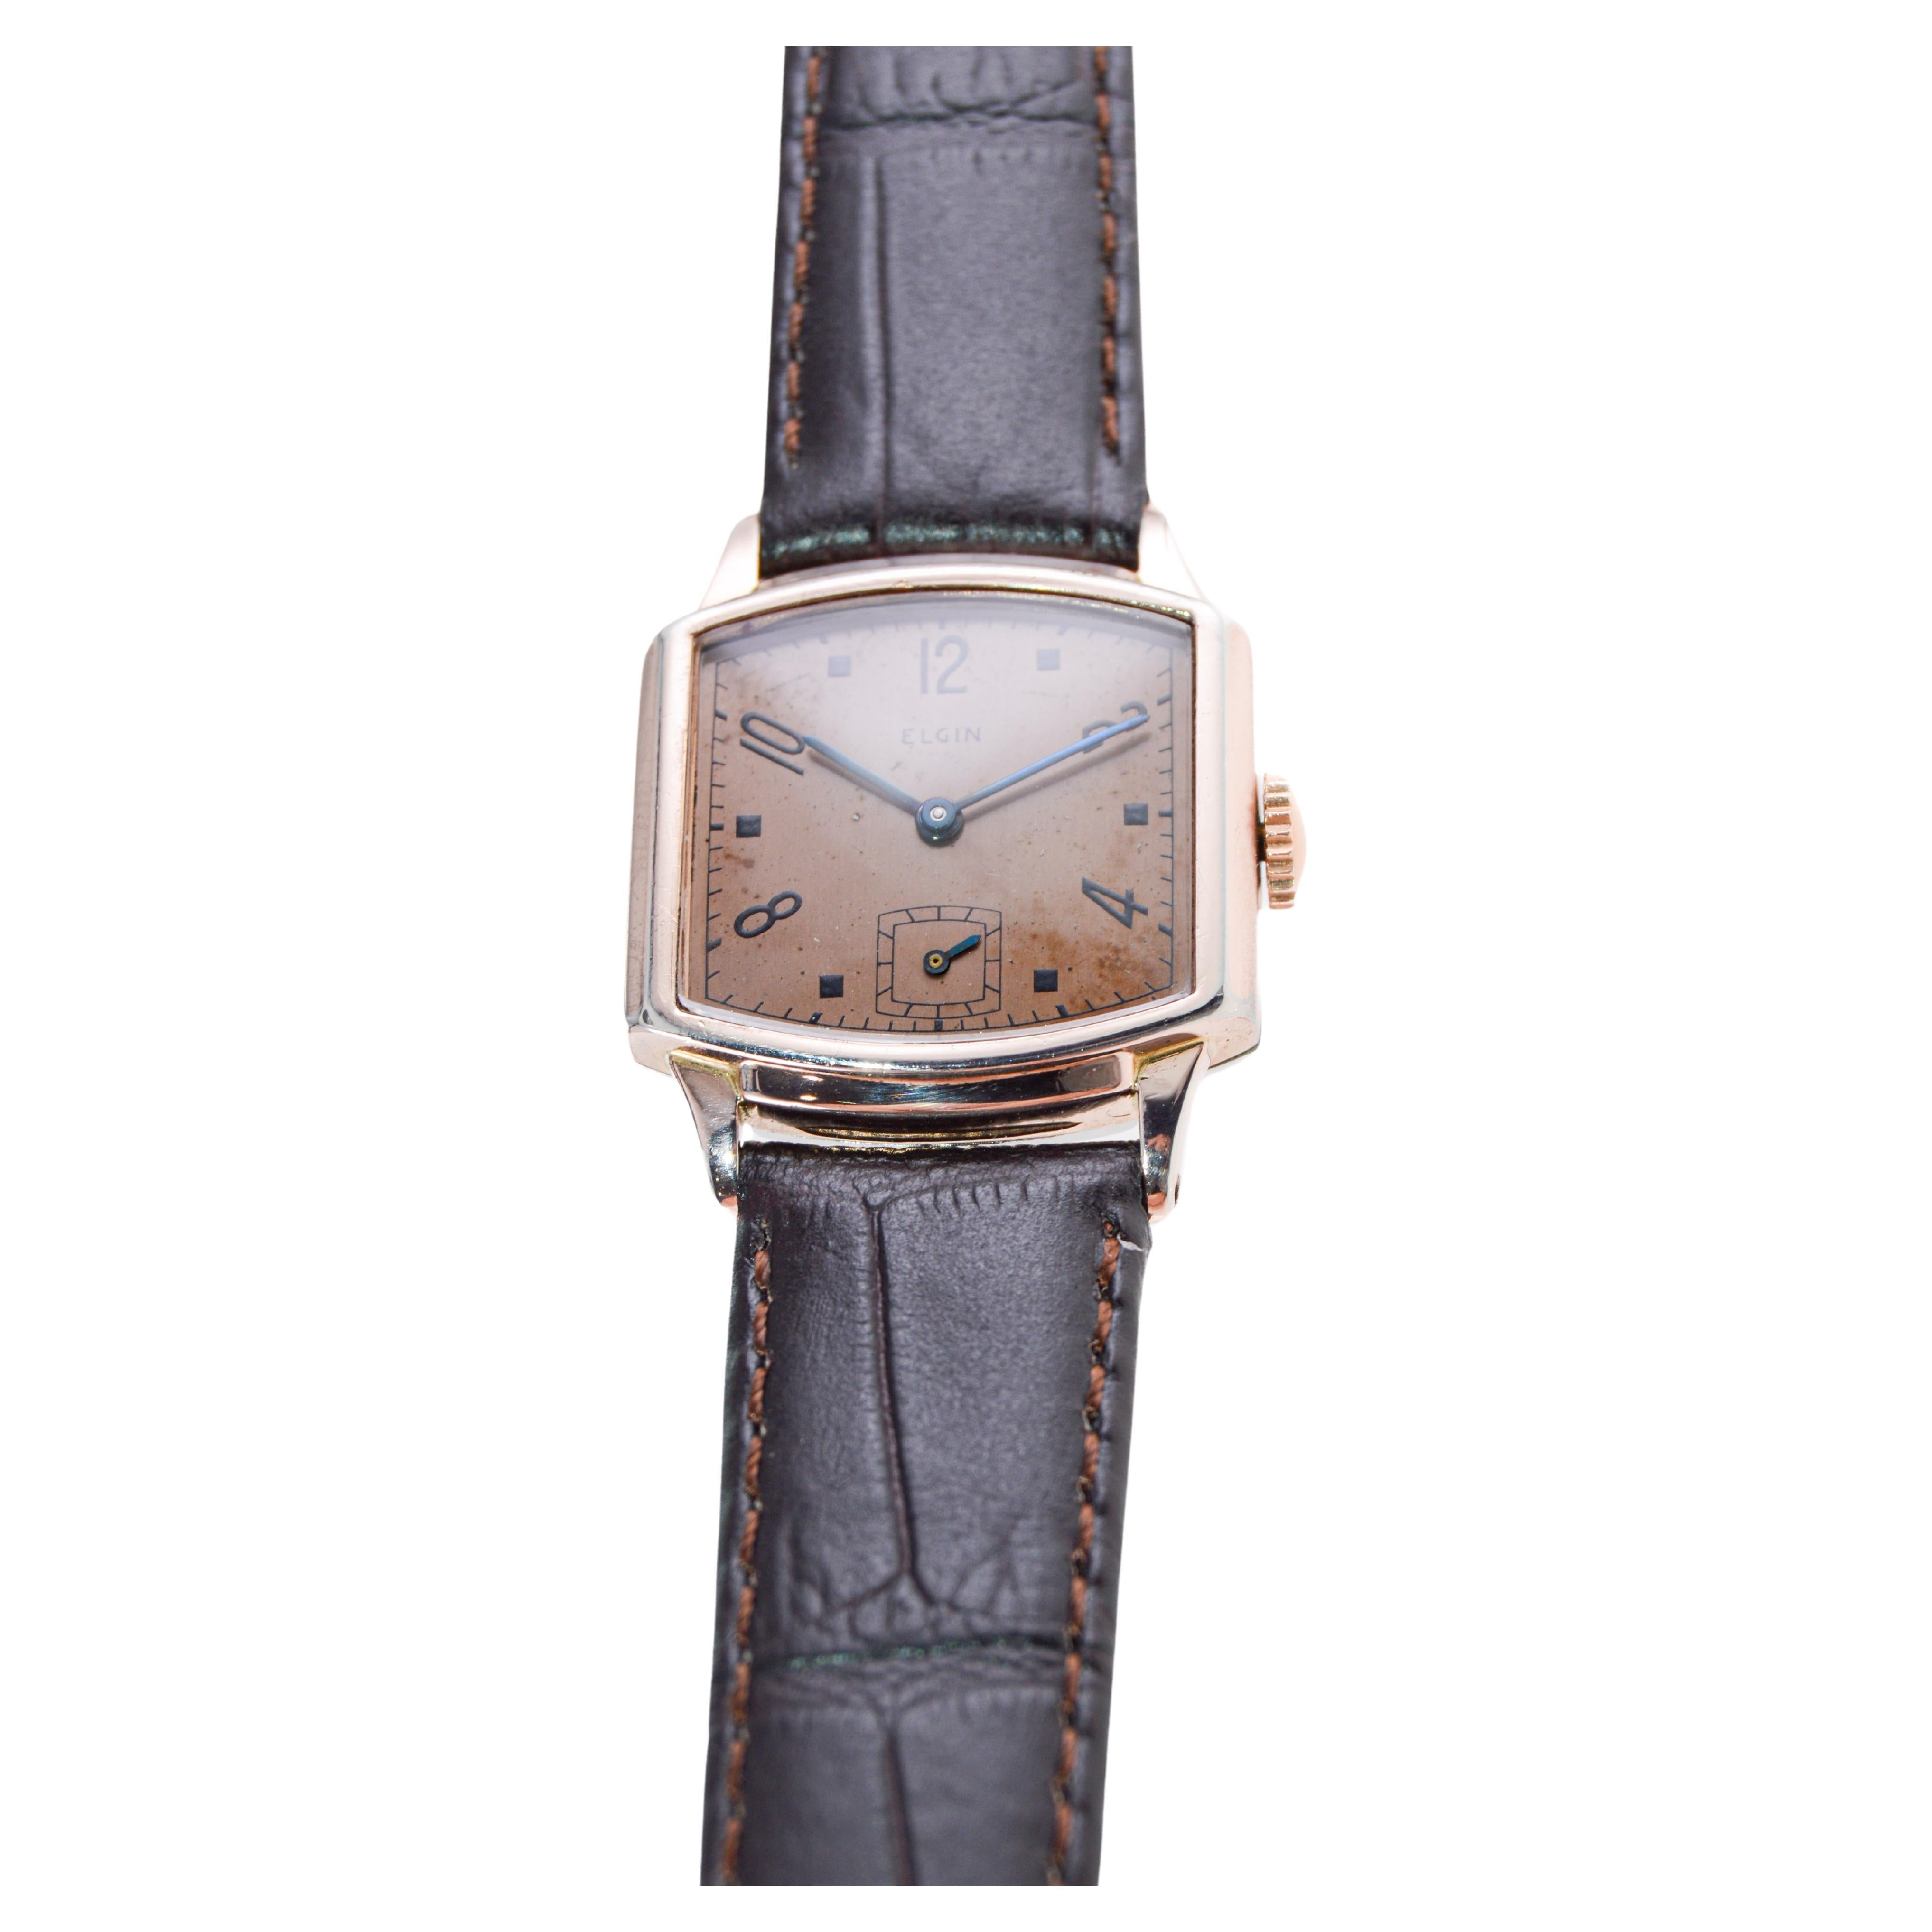 vintage elgin wrist watch models